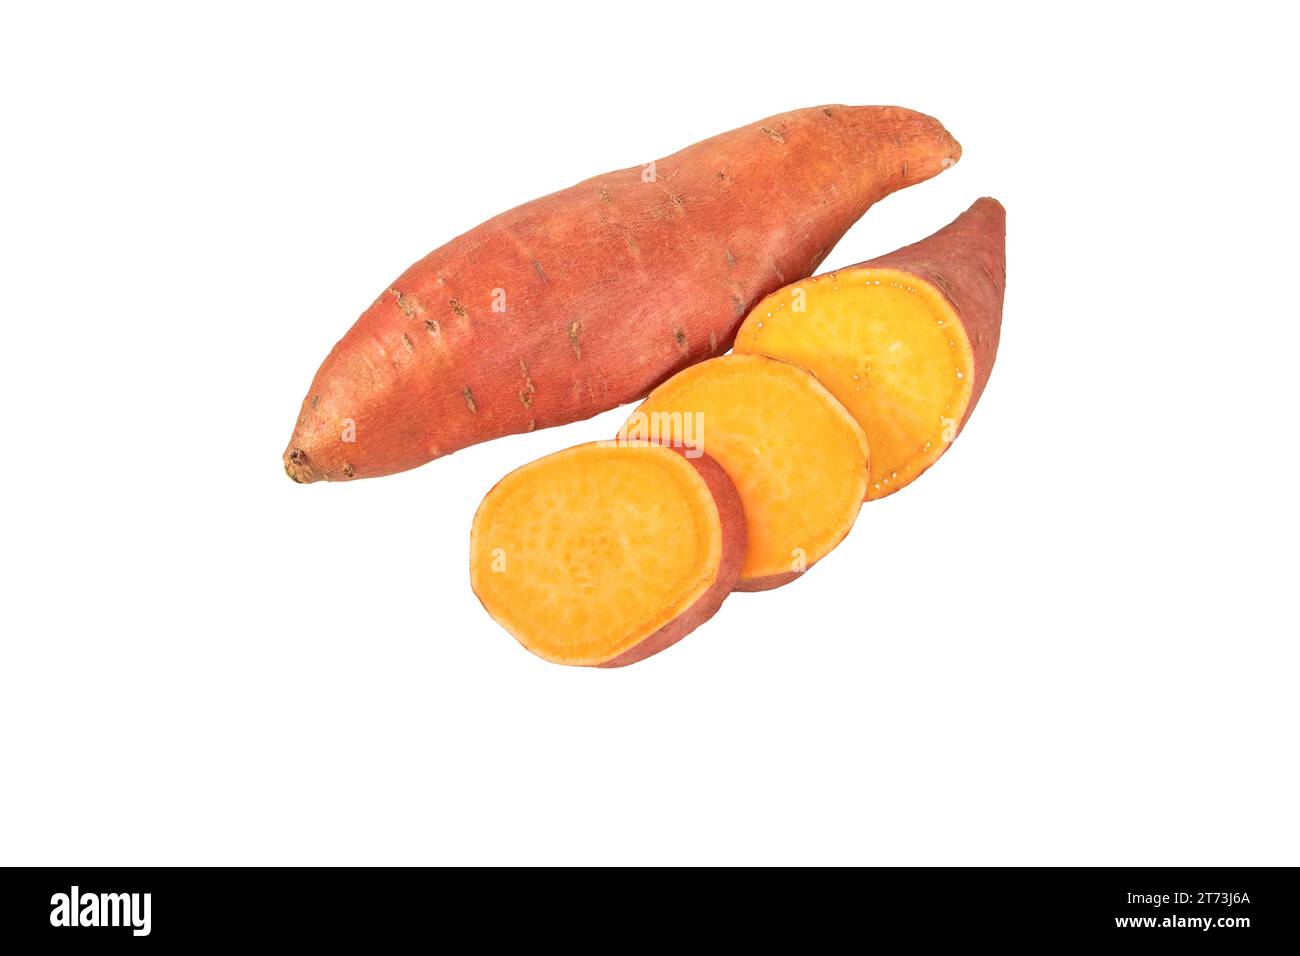 Süßkartoffel oder Süßkartoffel, ganze und in Scheiben geschnittene Röhrchen mit roter Haut und gelbem Fruchtfleisch, isoliert auf weiß. Grundnahrungsmittel für Gemüse. Stockfoto